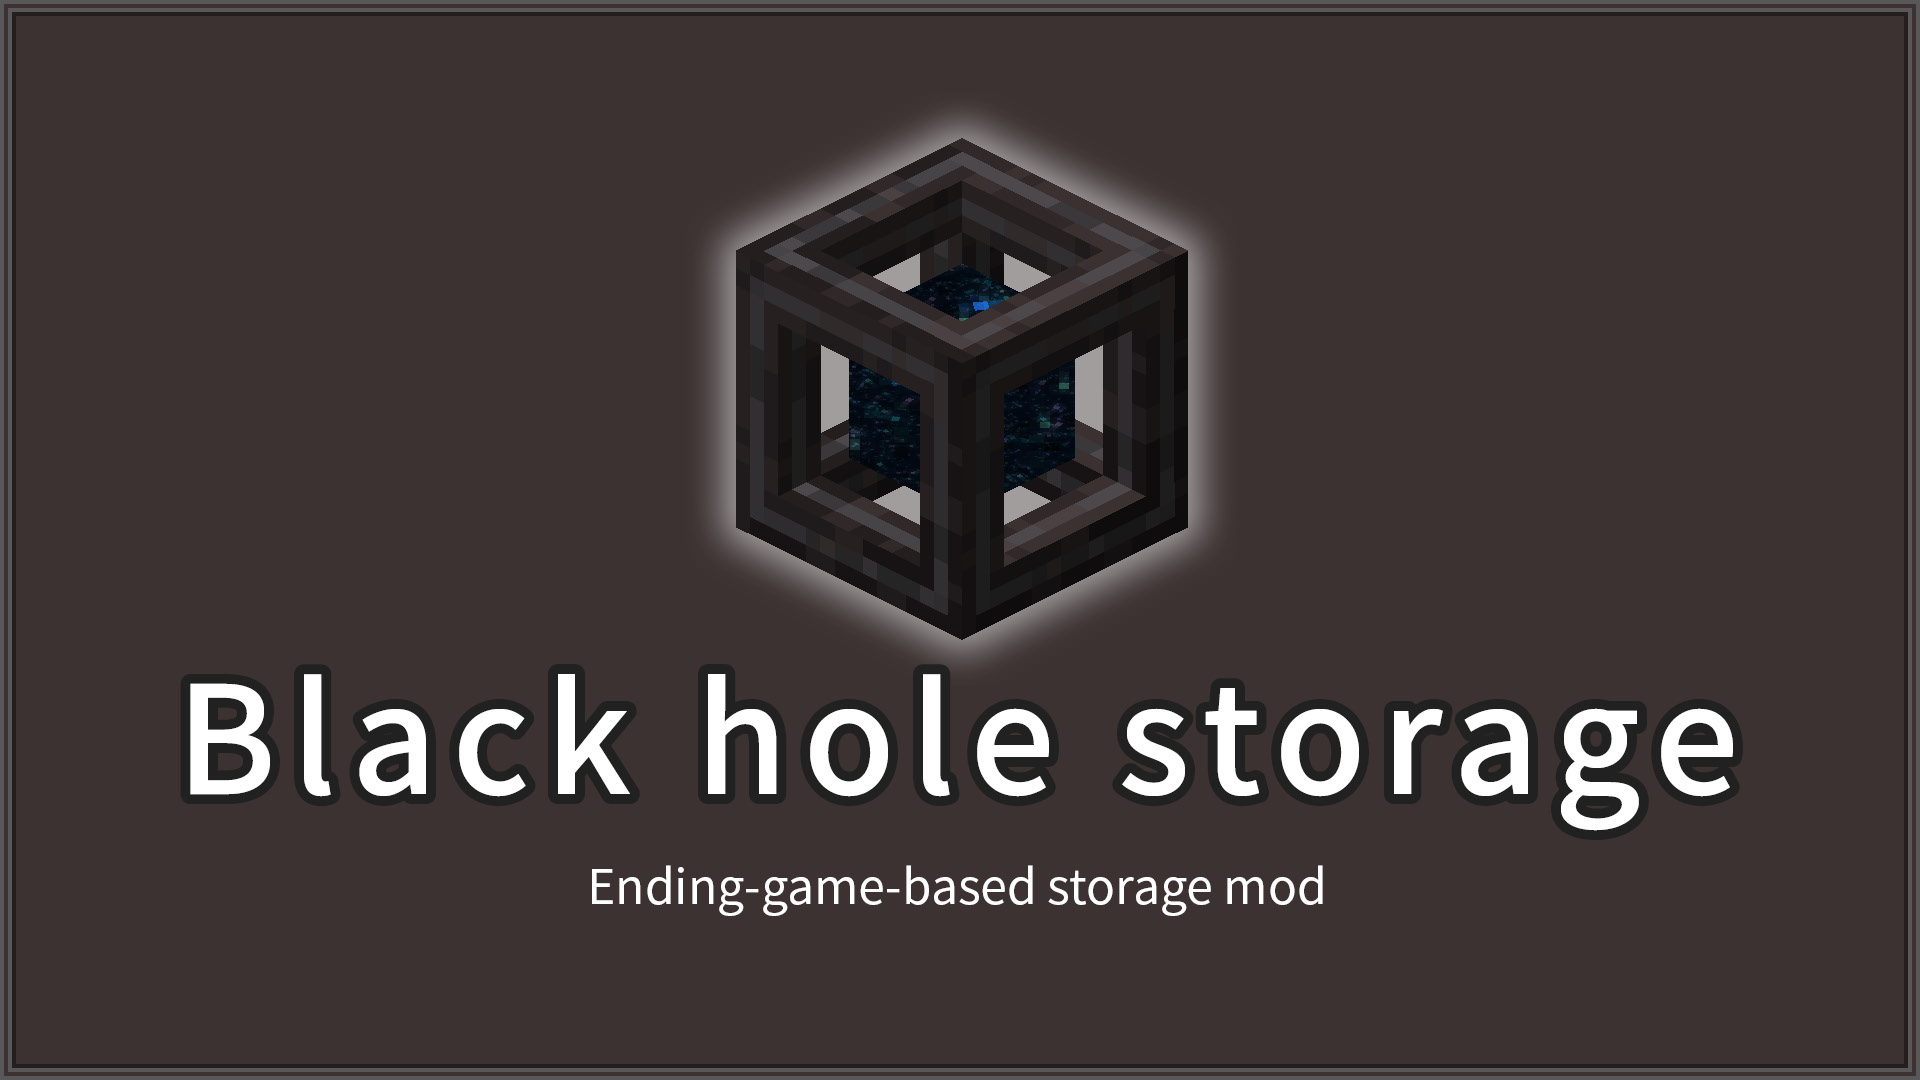 Black hole storage